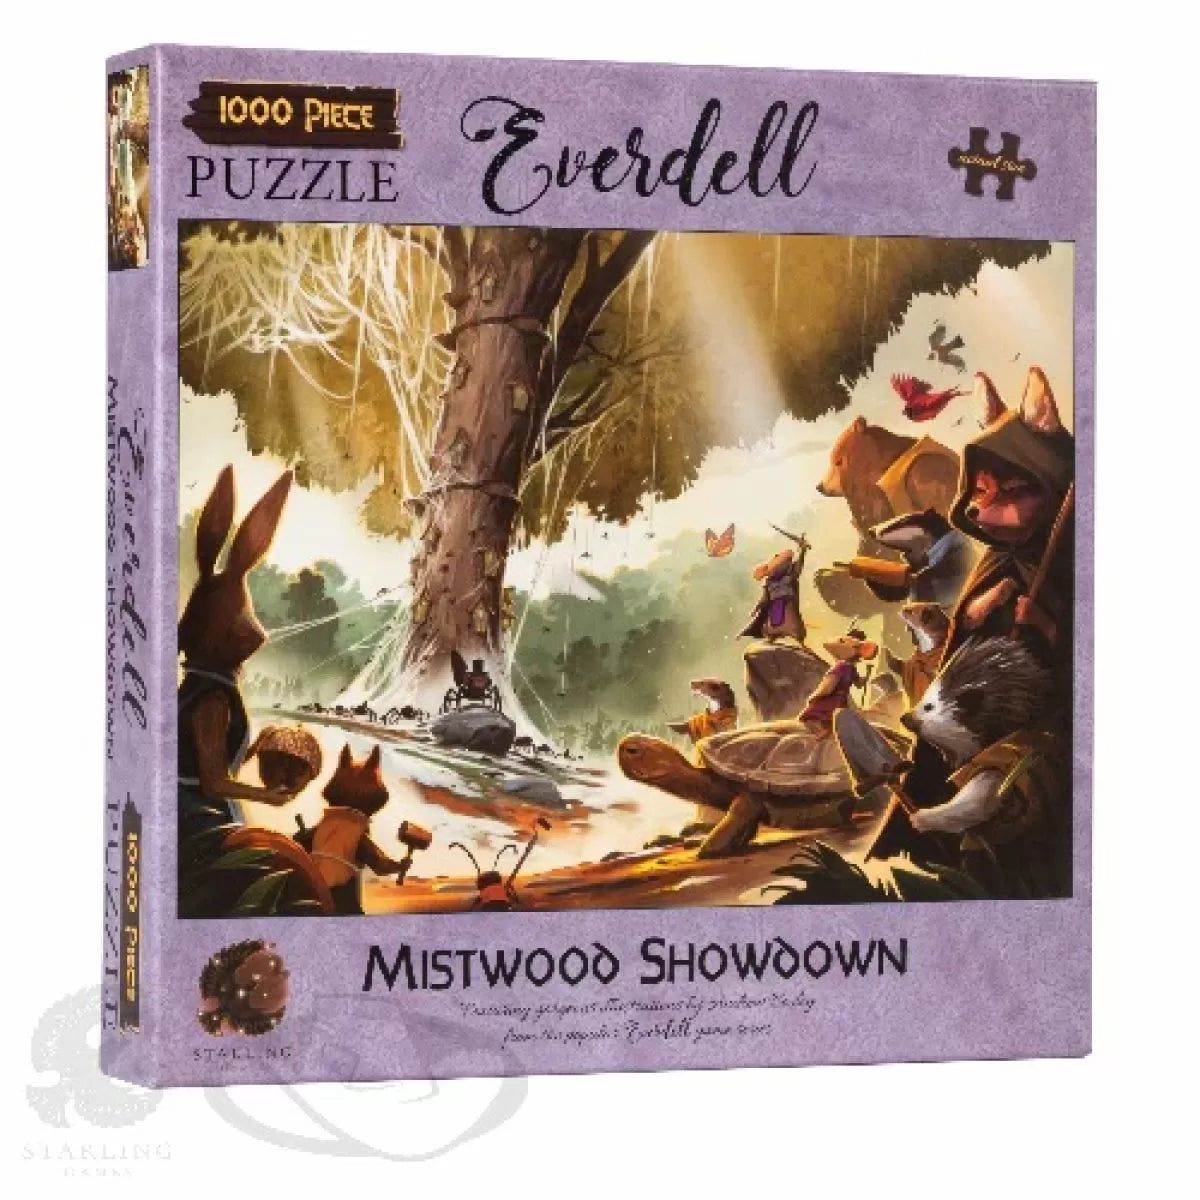 Everdell Mistwood Showdown - 1000 Piece Jigsaw